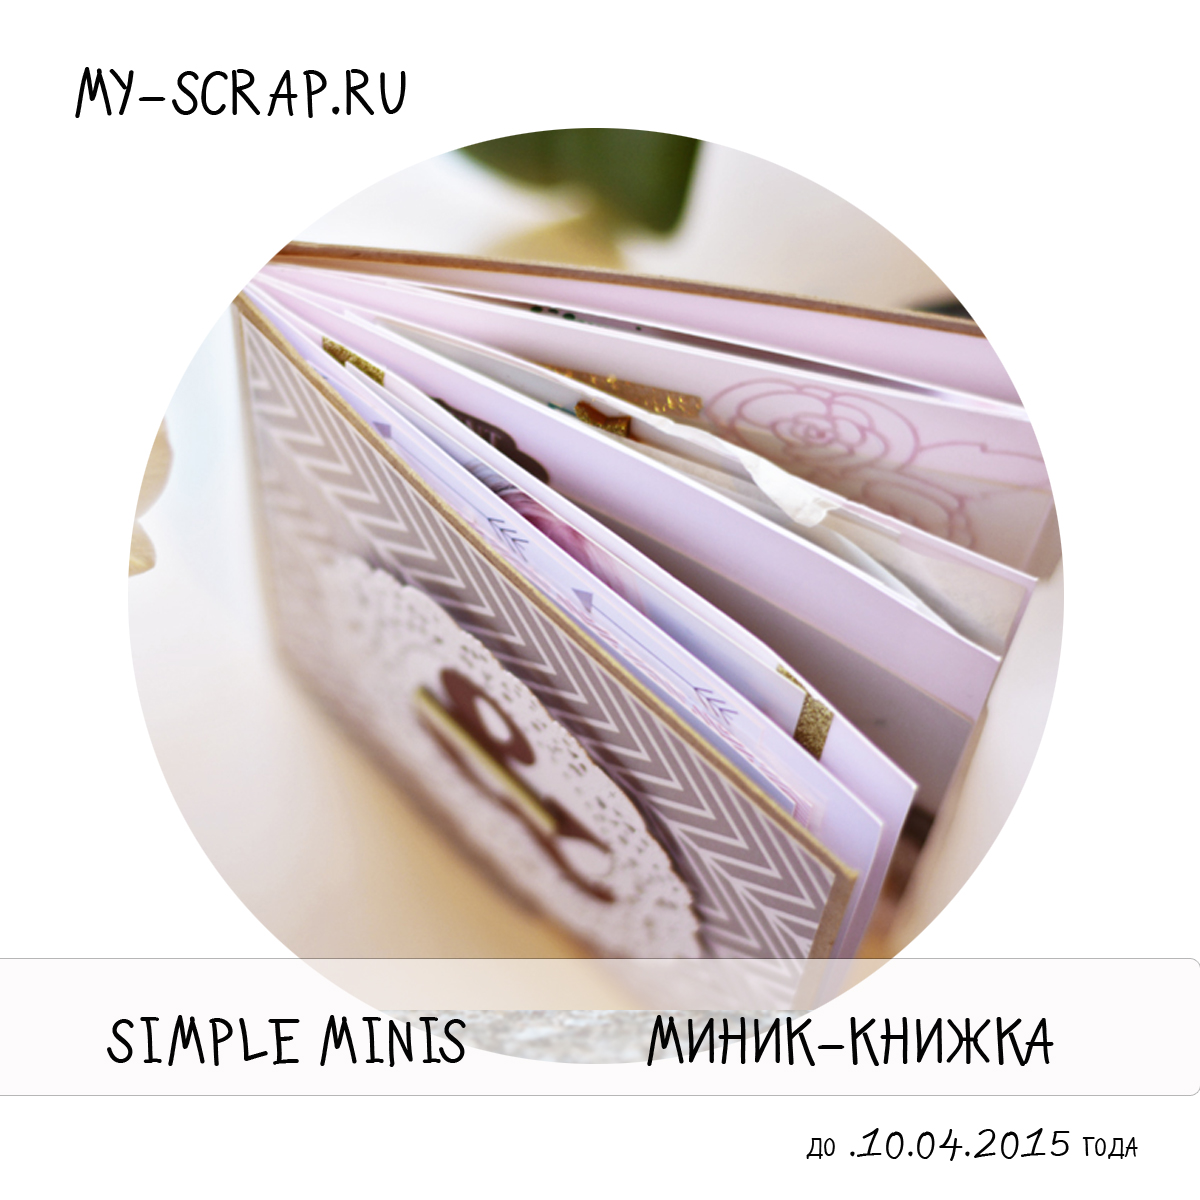 http://scrapulechki.blogspot.ru/2015/03/cas-simple-minis.html